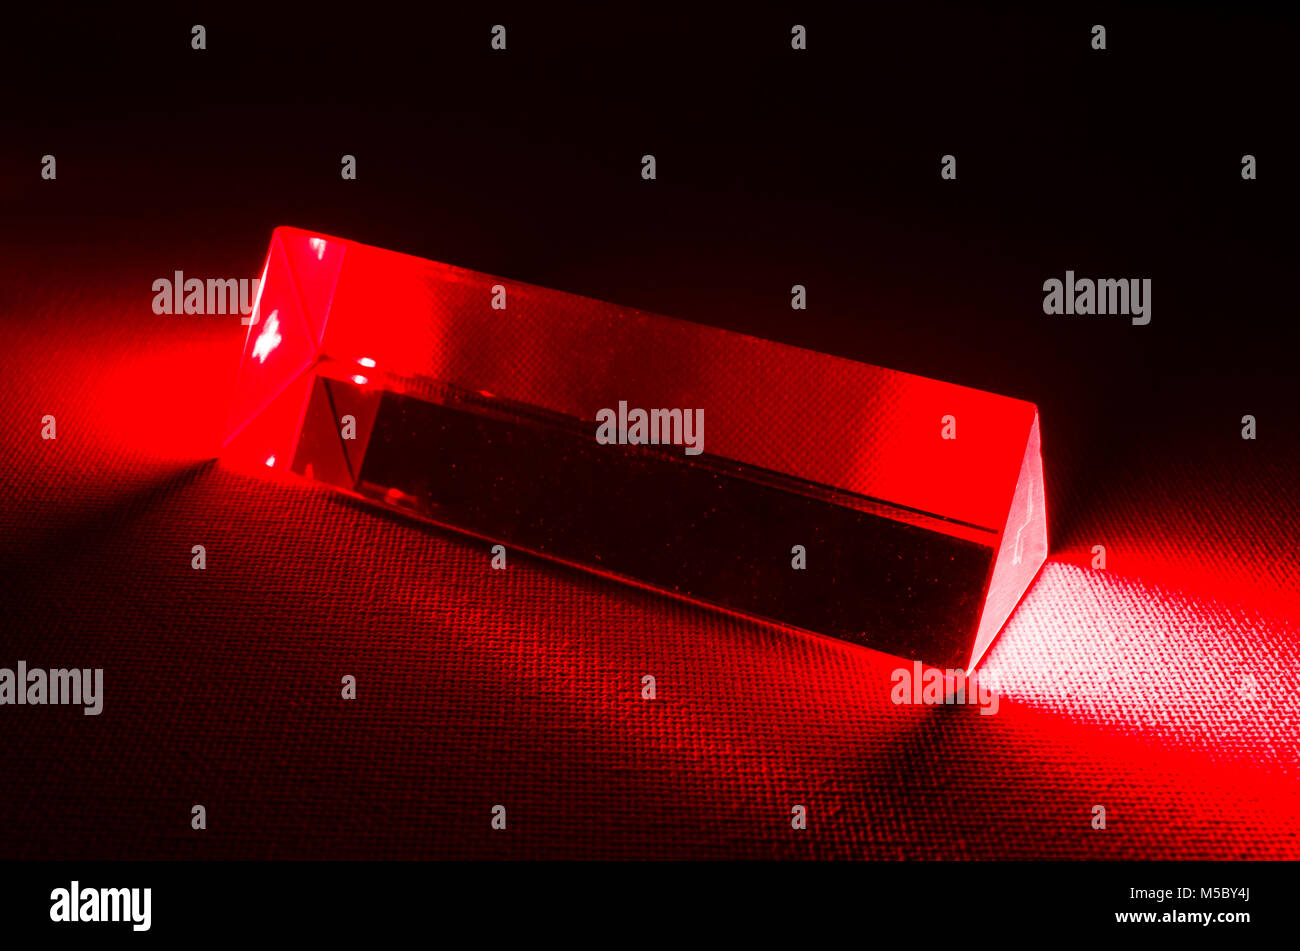 Encore un studio-vie Photographie d'un prisme de verre triangulaire avec une lumière laser rouge entrant dans la fin du prisme Banque D'Images